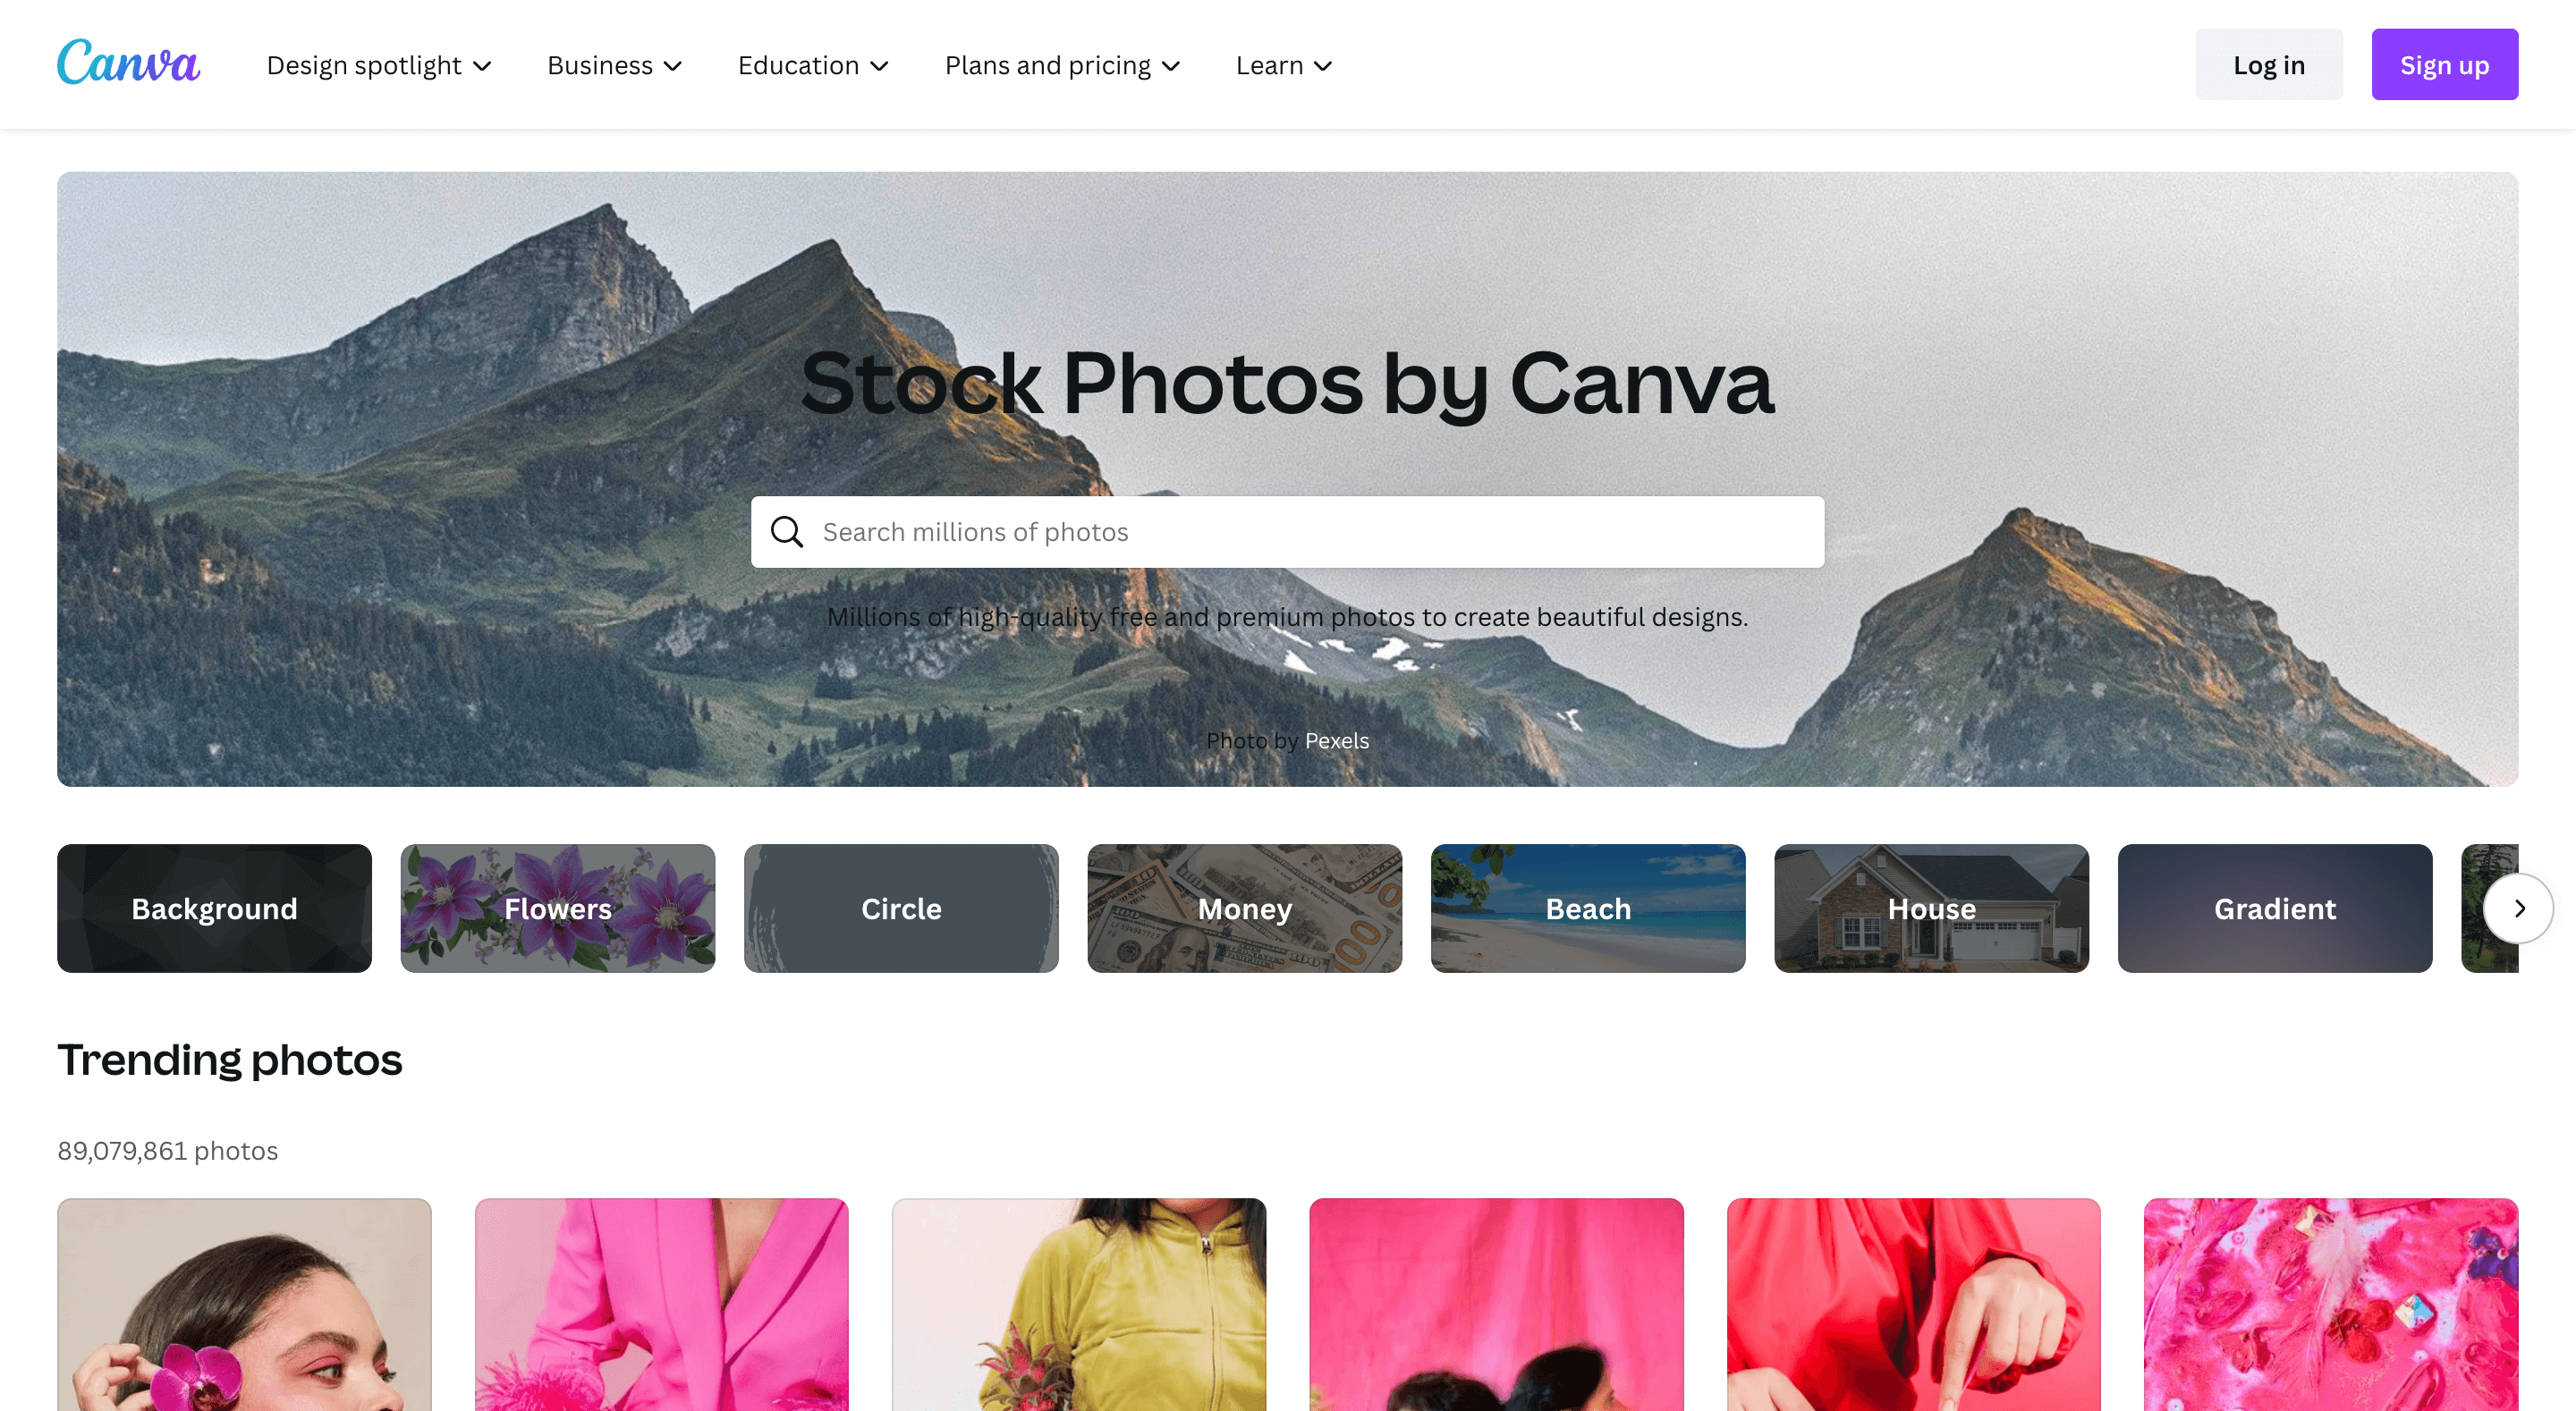 صور مخزون مجانية للمدونين- مخزون الصور بواسطة Canva